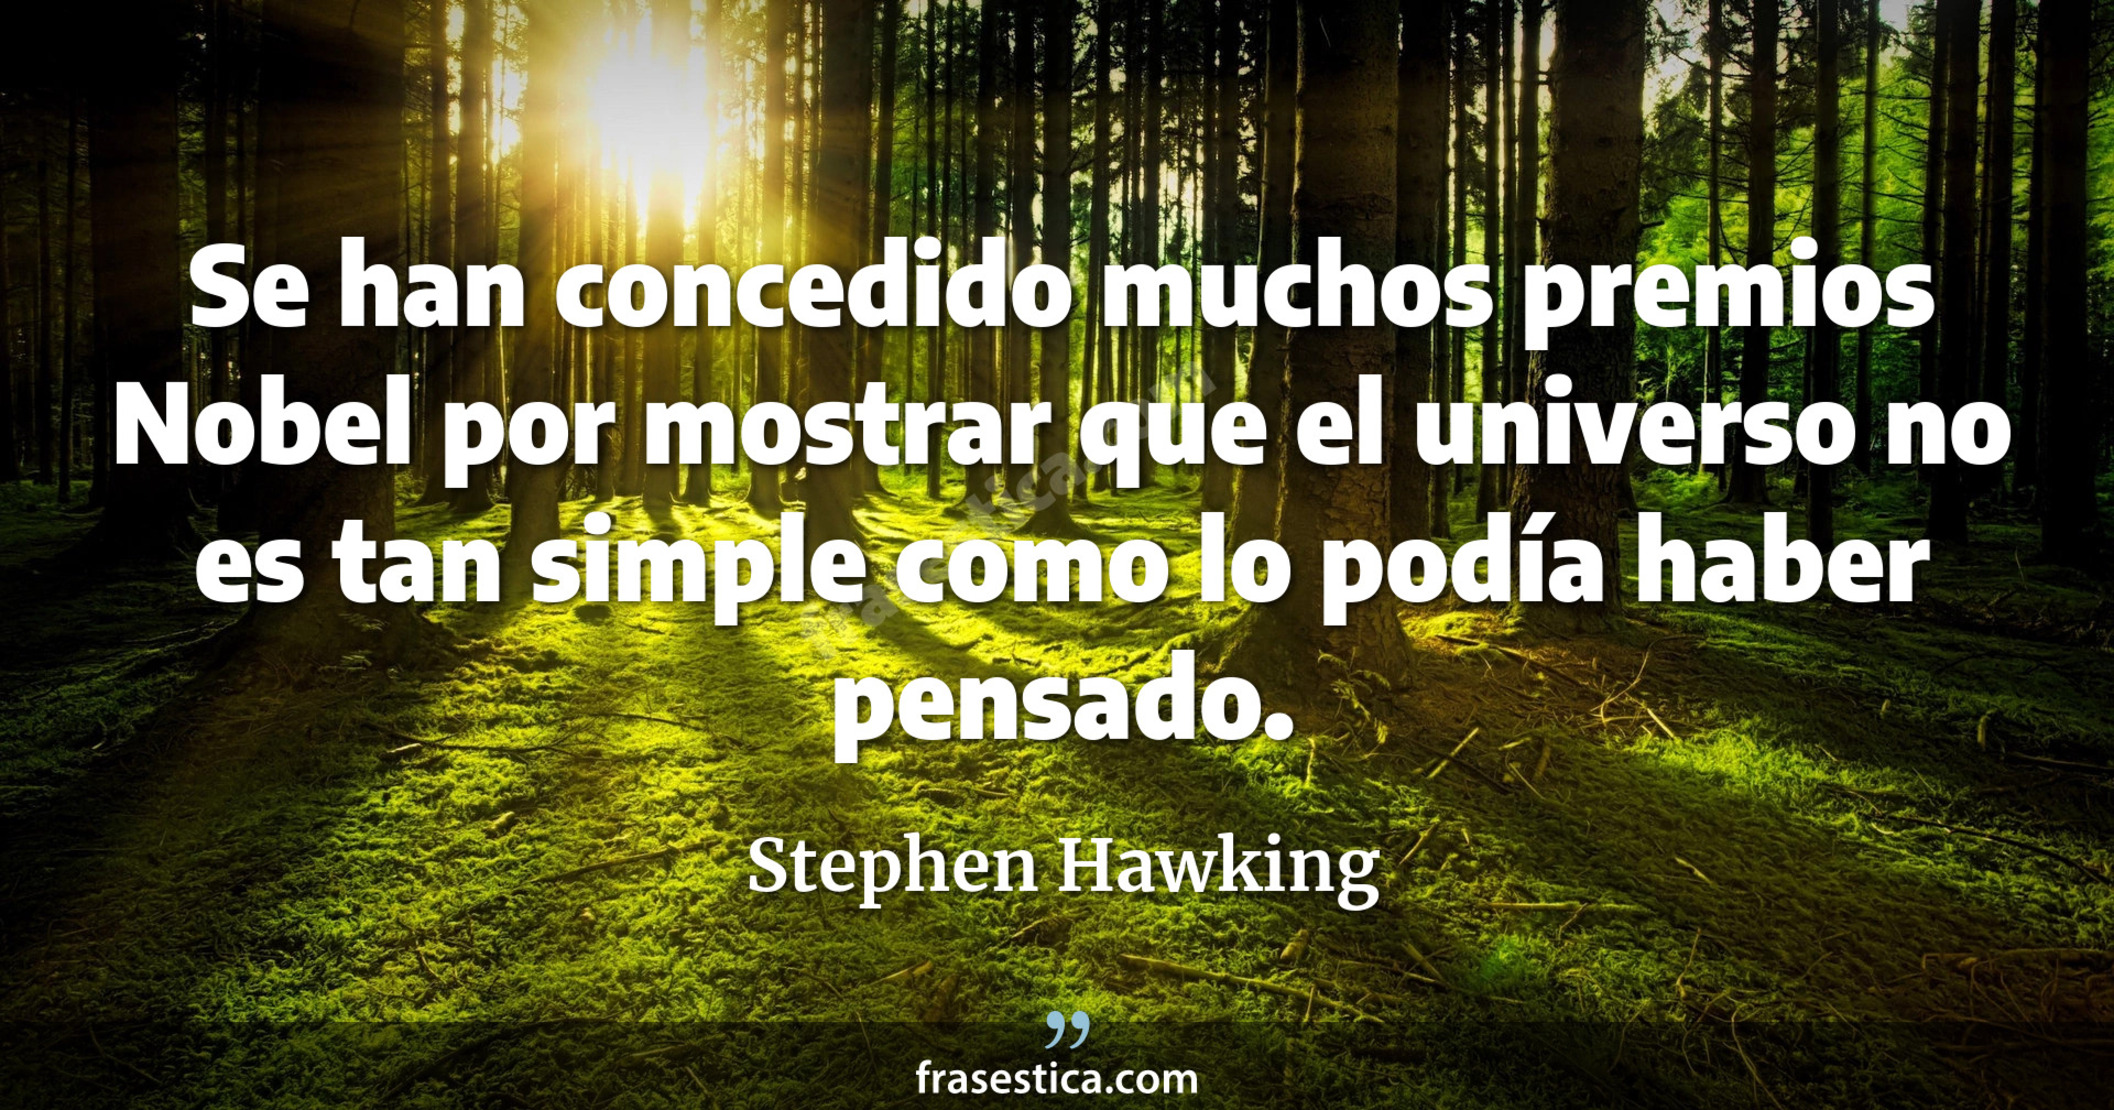 Se han concedido muchos premios Nobel por mostrar que el universo no es tan simple como lo podía haber pensado. - Stephen Hawking